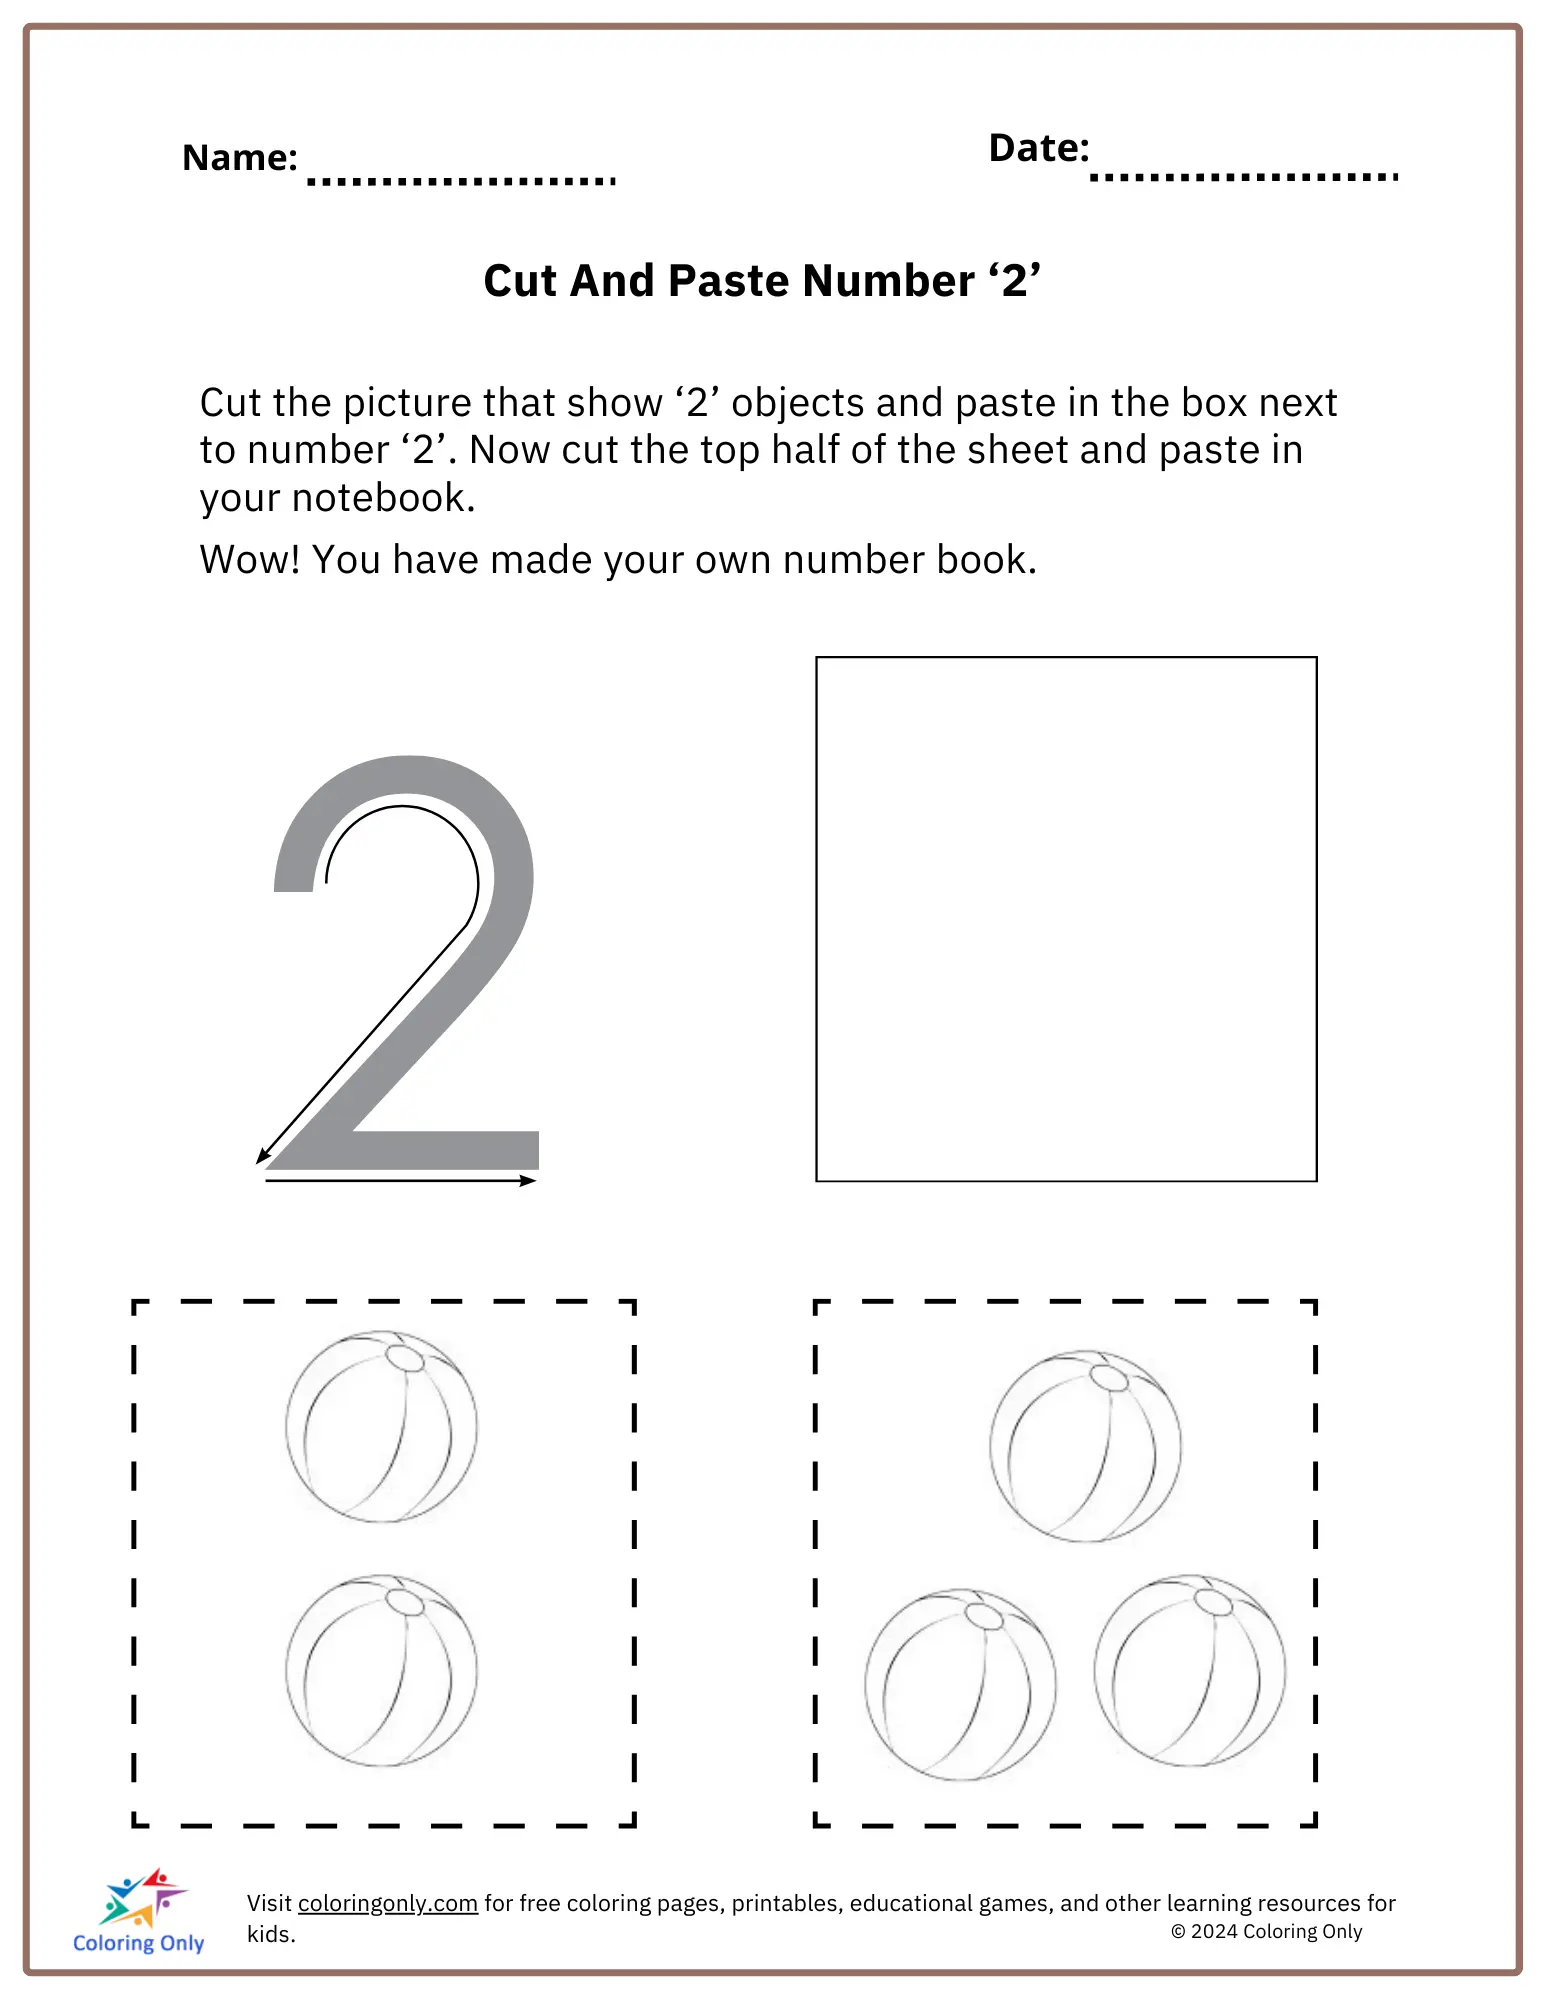 Cut And Paste Number ‘2’ Free Printable Worksheet